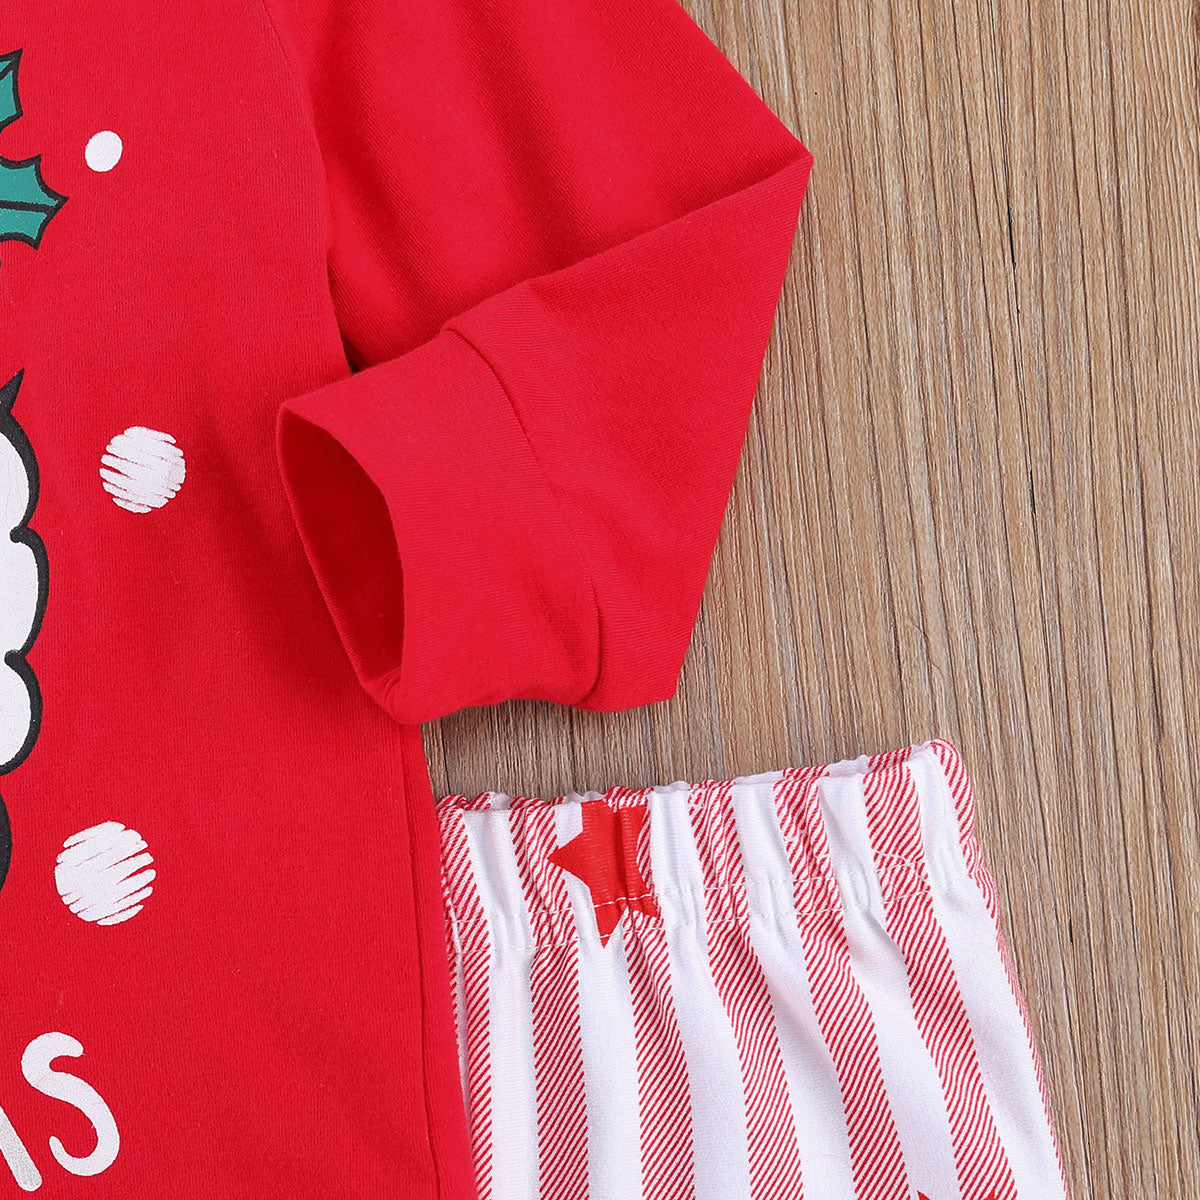 Kid Christmas Pajamas Set Santa Claus Long Sleeve Pullovers Pajamas